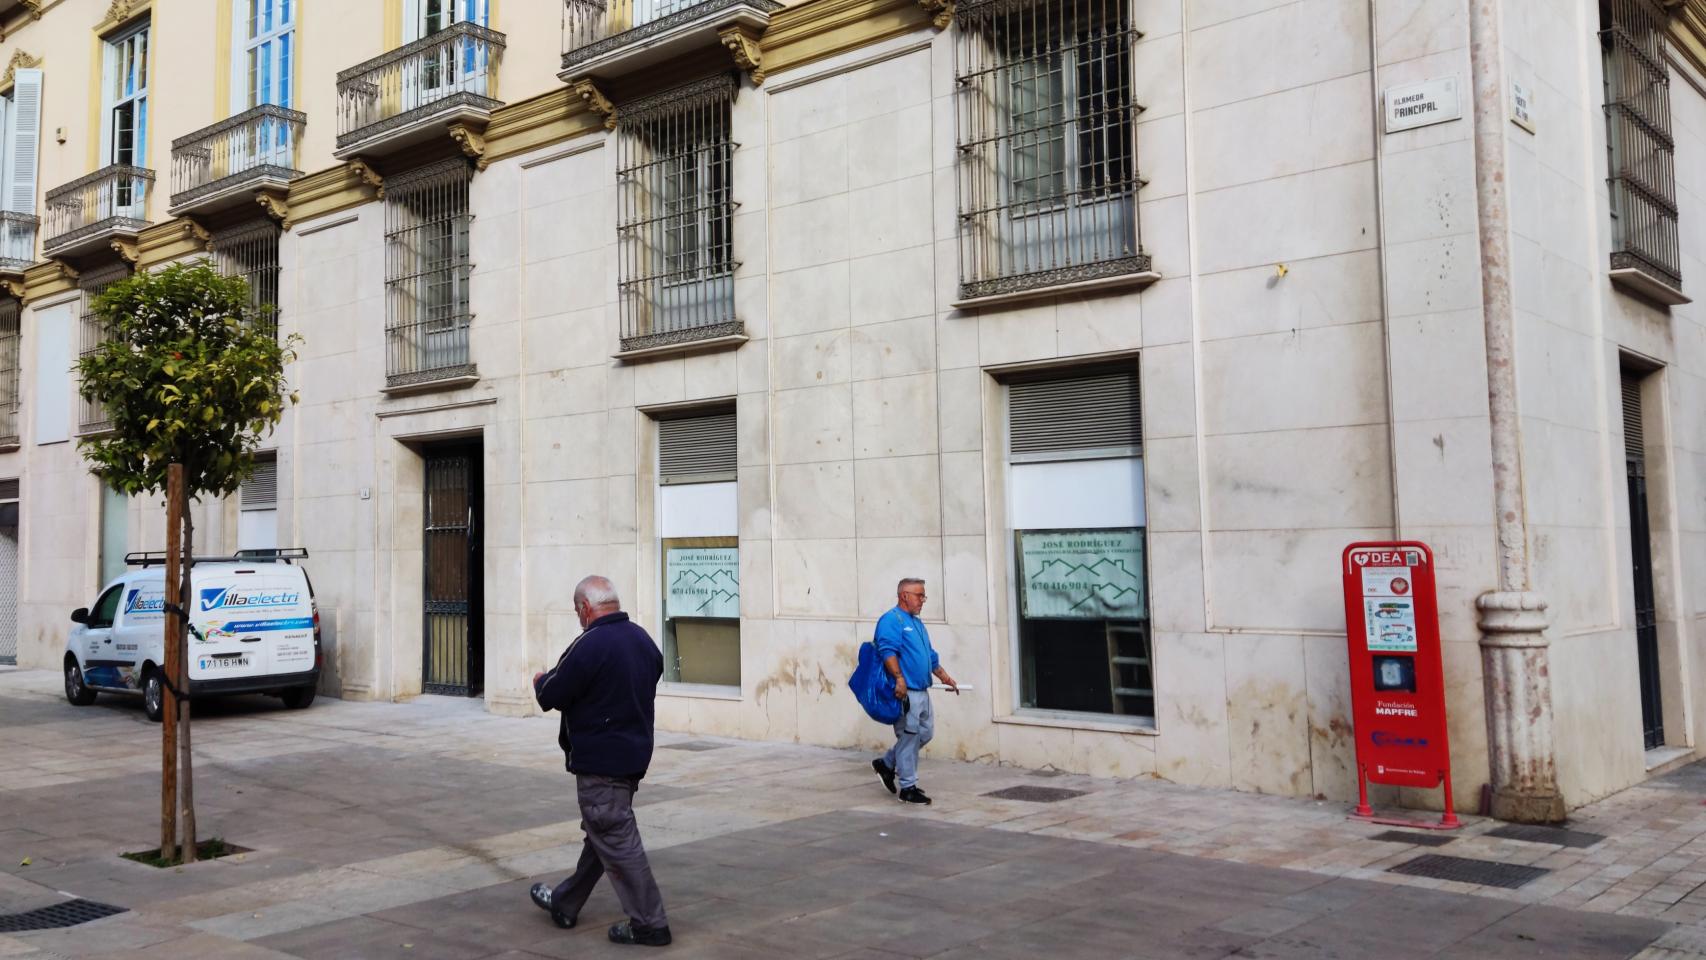 Nuevo en la Alameda Málaga: la de zapaterías RKS abre local